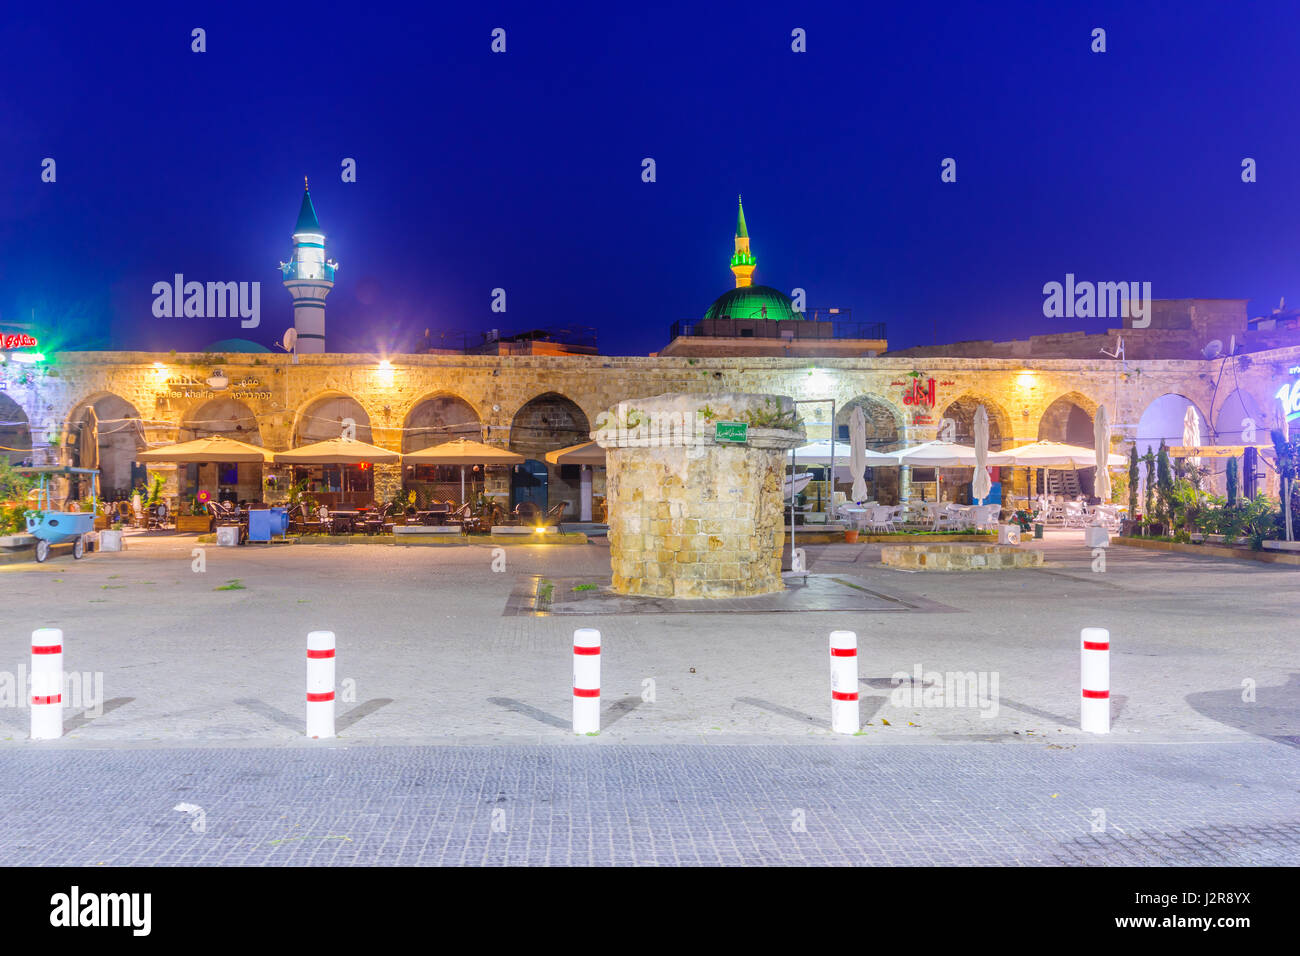 Akko, ISRAEL - 27. April 2017: Übernachtung in Khan a-Shawarda, in der Altstadt von Akko (Akko), Israel. Es ist eine alte Händler-Gasthof, welcher heute als b dient Stockfoto